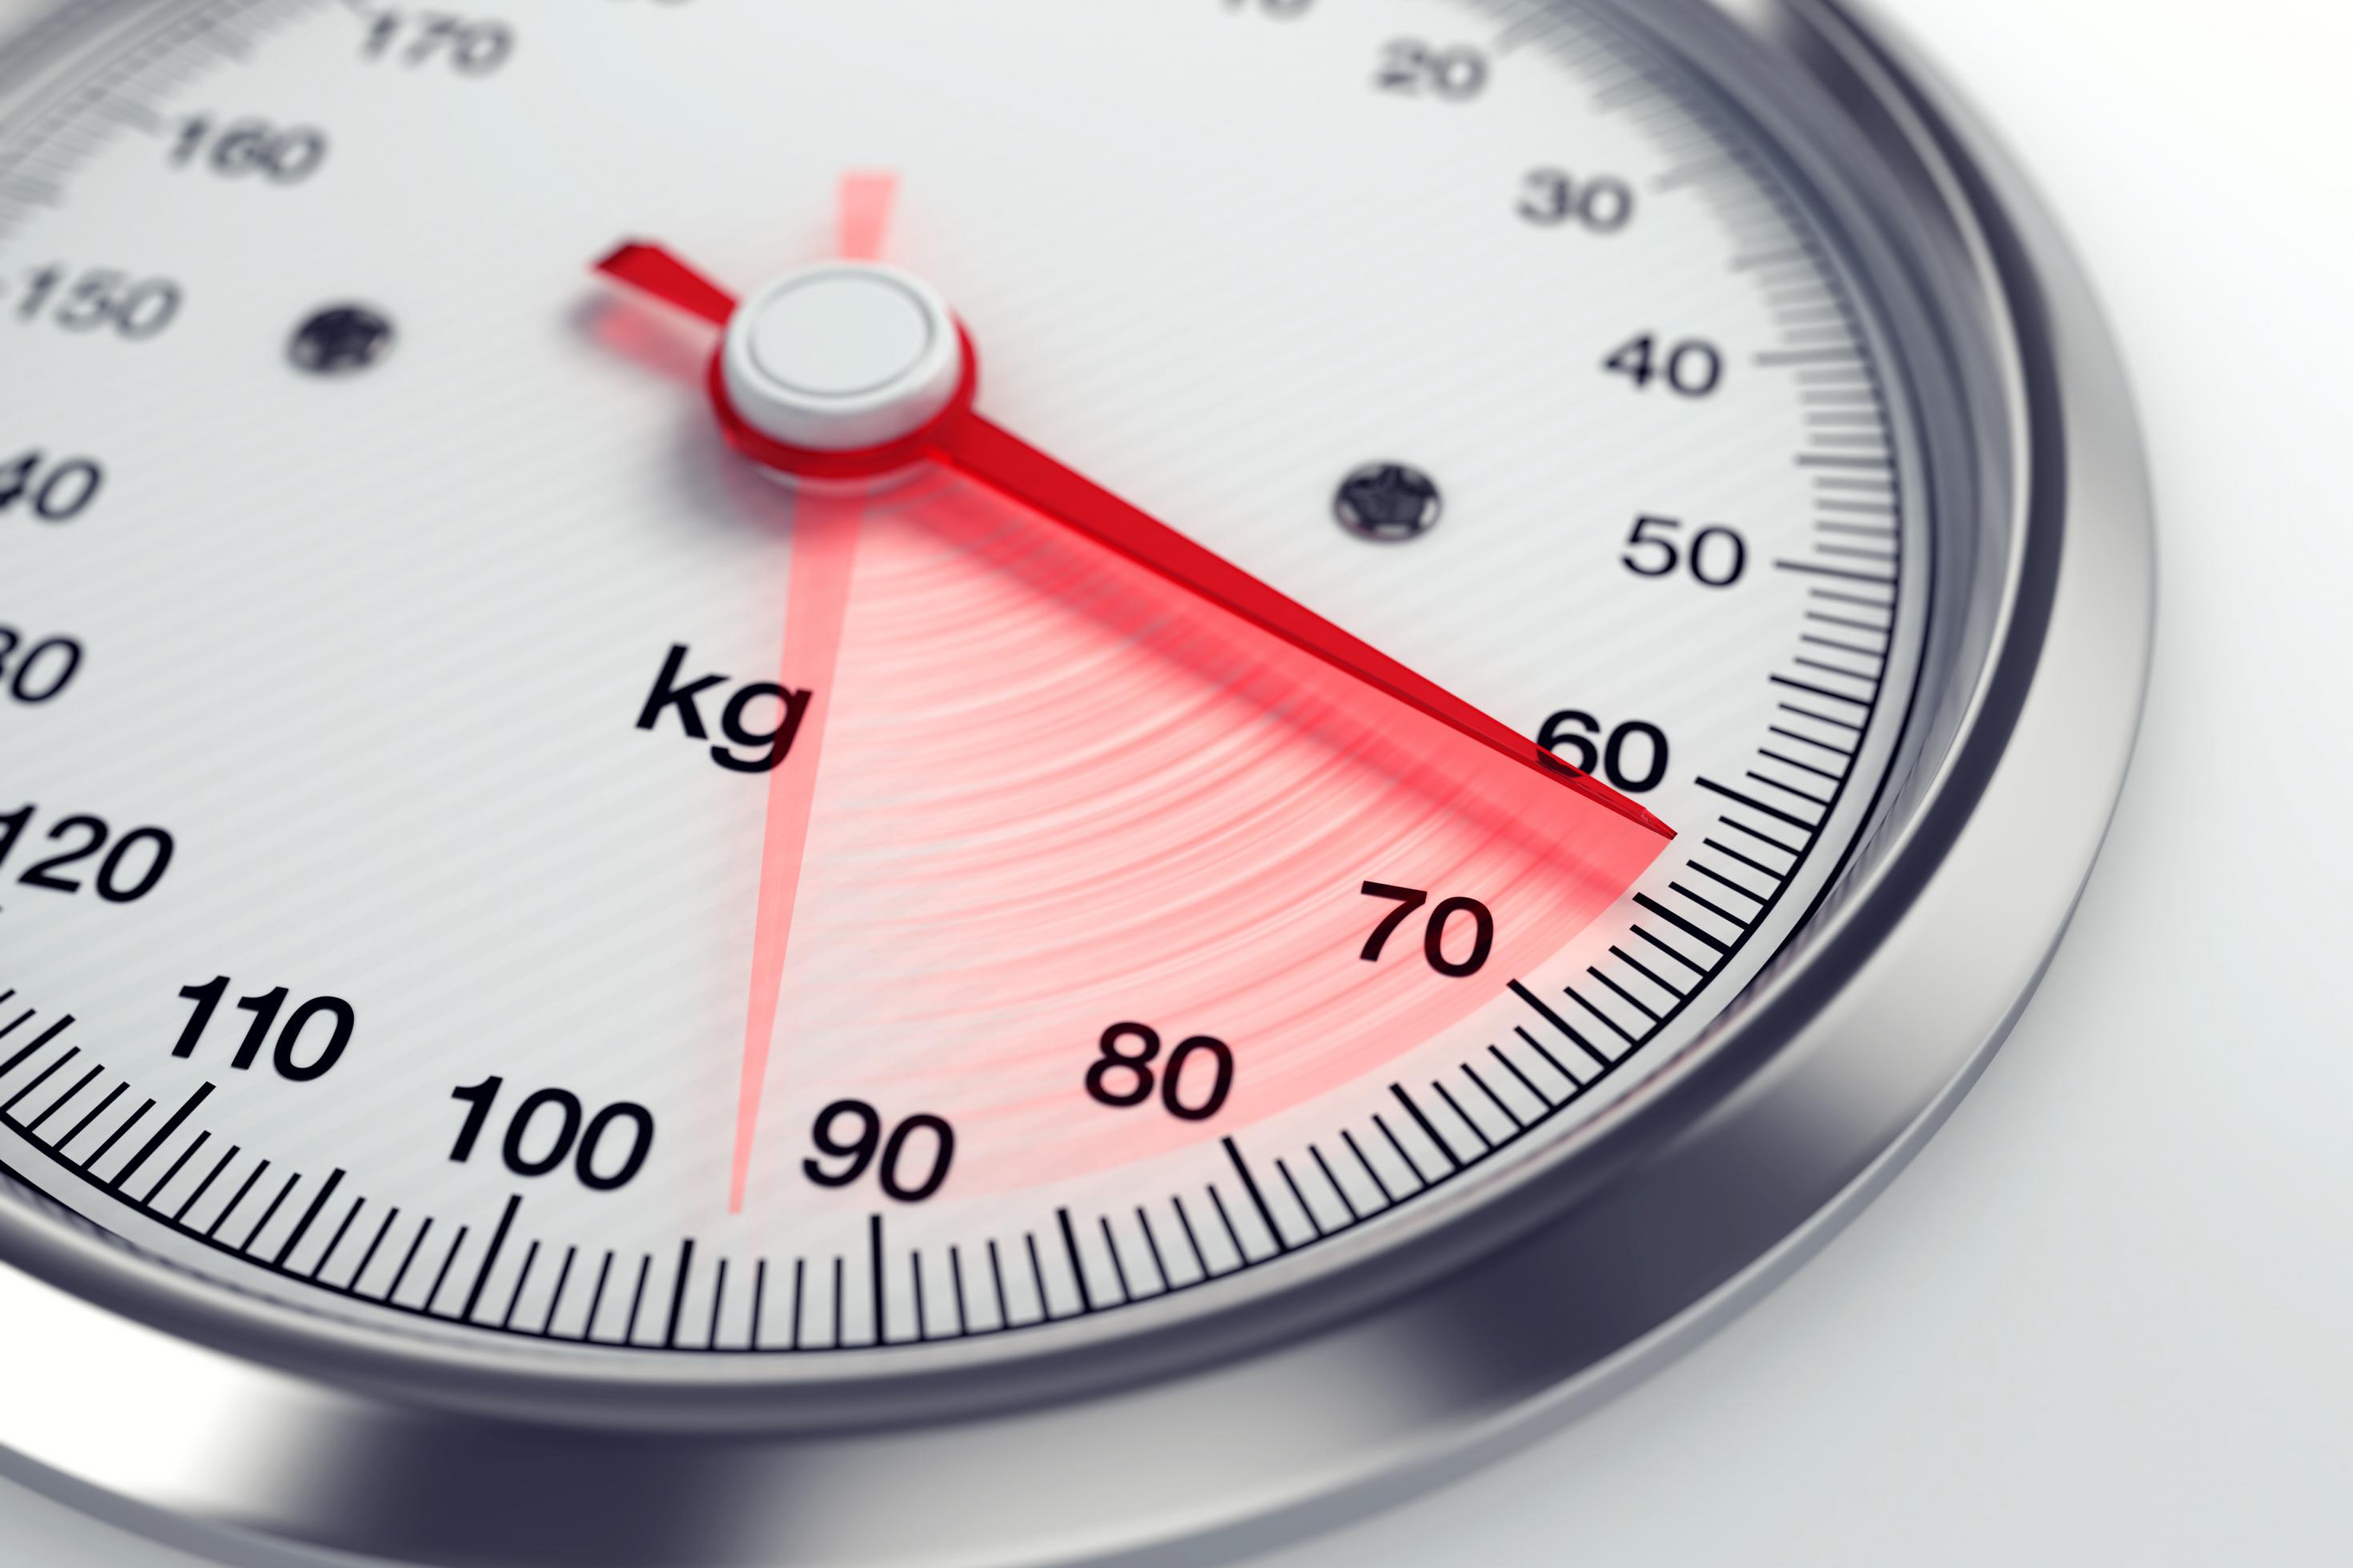 Eine rote Nadel auf der Skala einer Waage deutet einen Gewichtsverlust an.